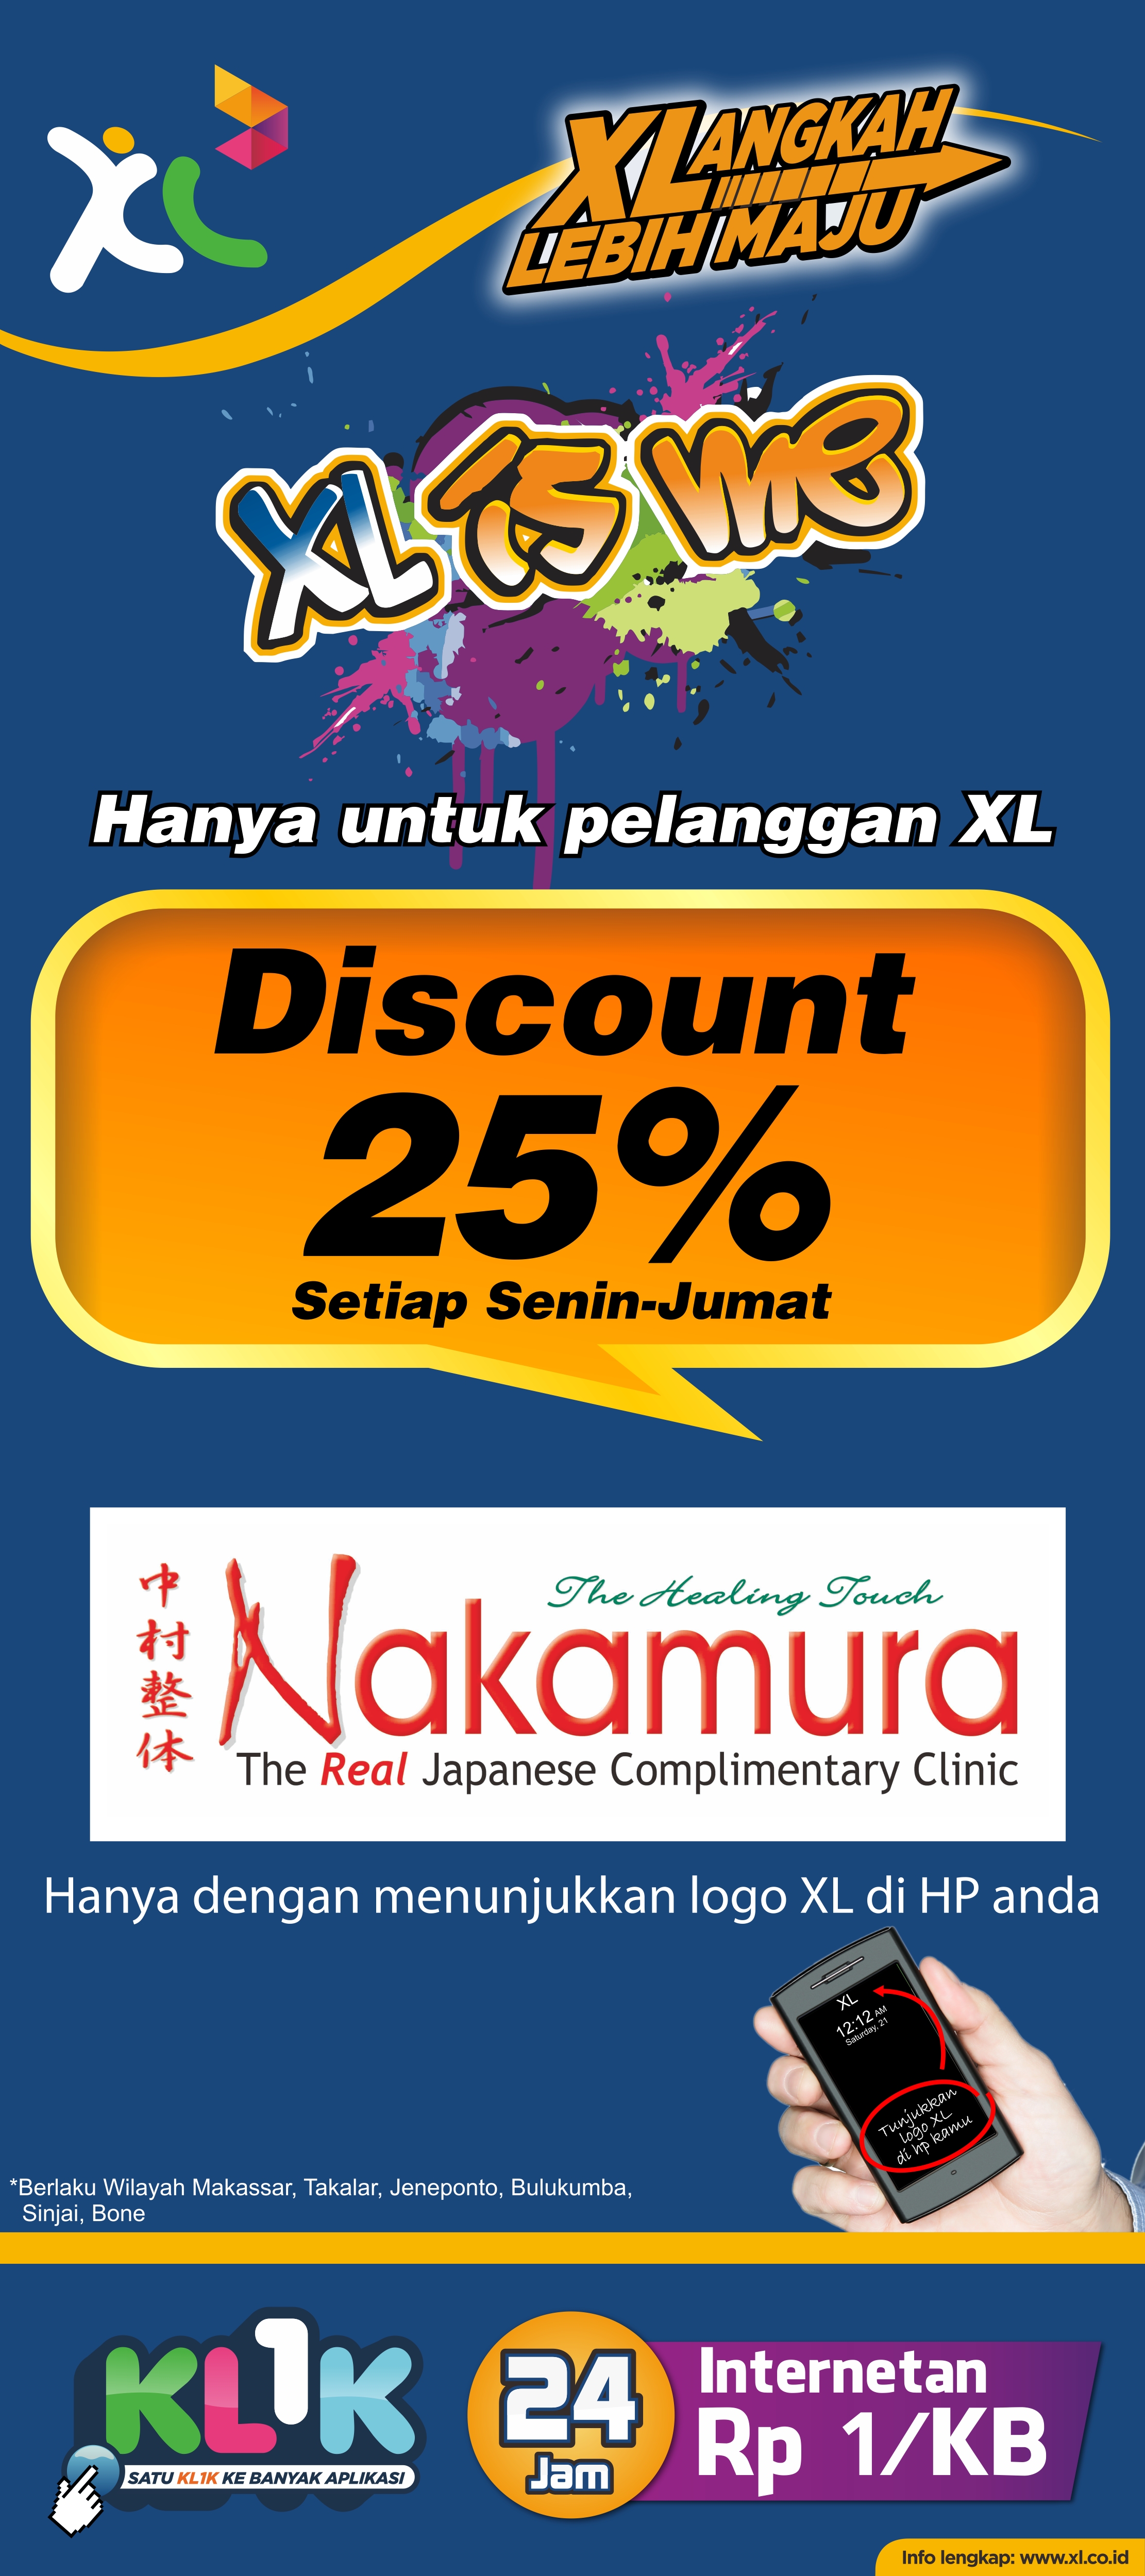 Pijat sehat discount 25% di Nakamura  XL IS ME Discount